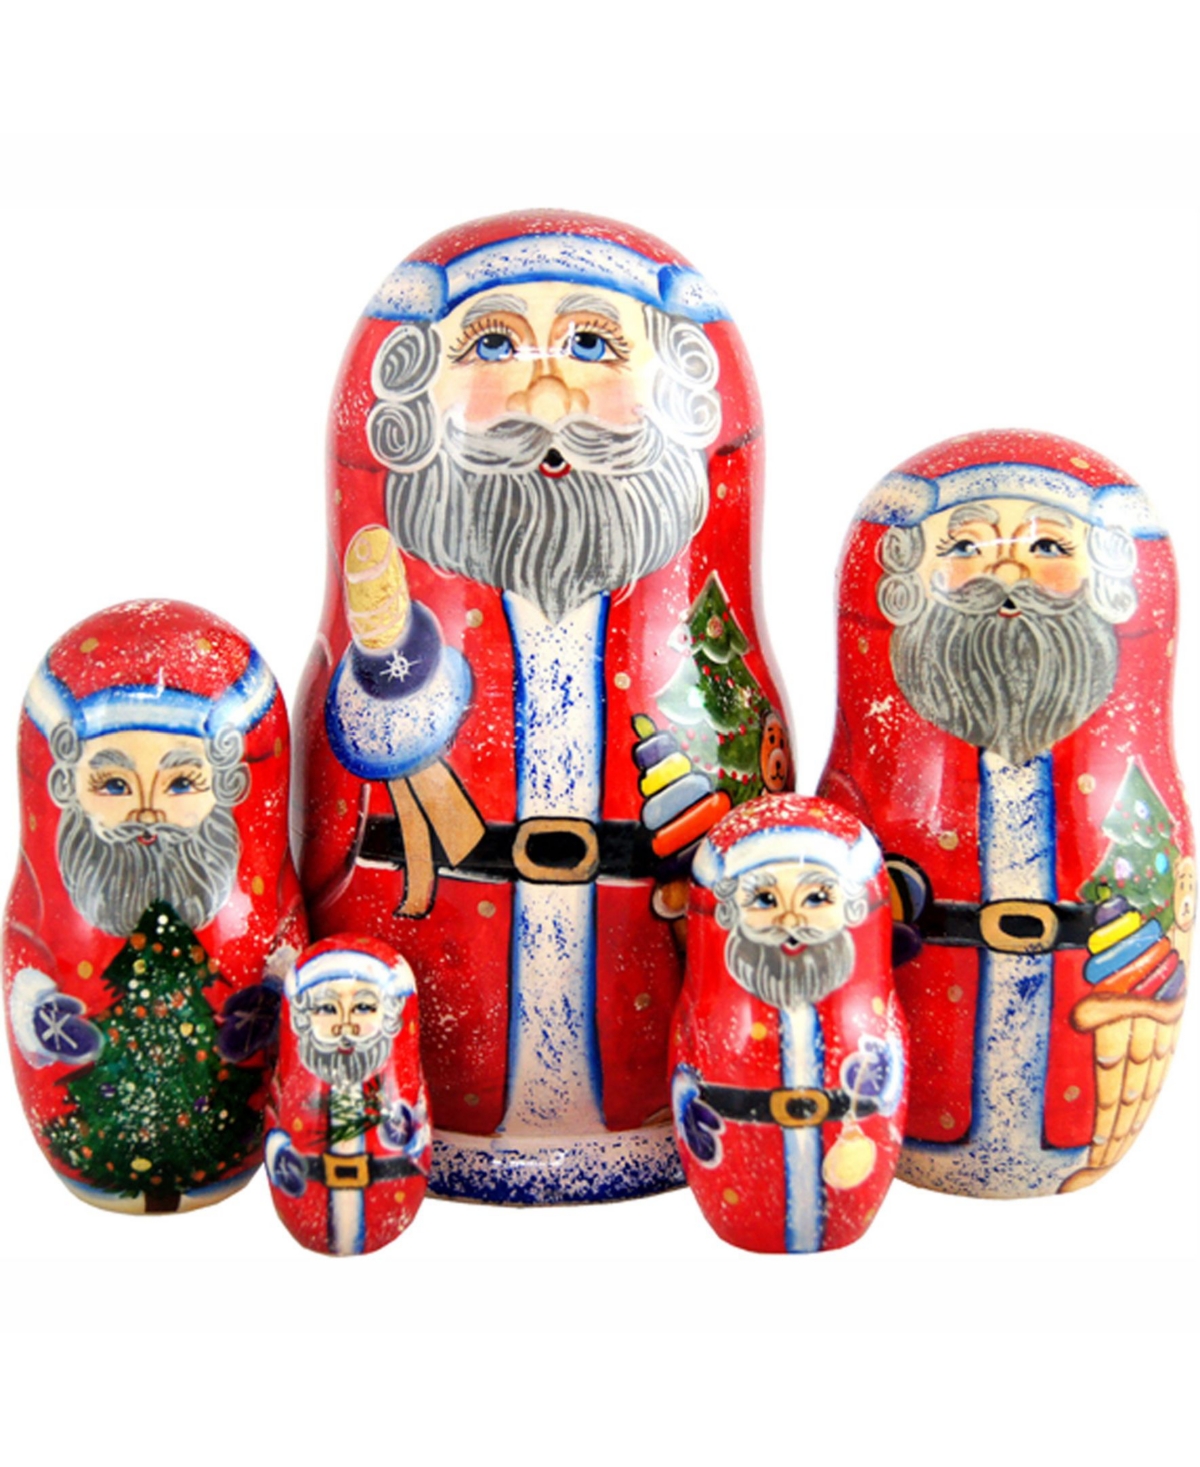 5 Piece Bell Ring Santa Russian Matryoshka Nested Doll Set - Multi